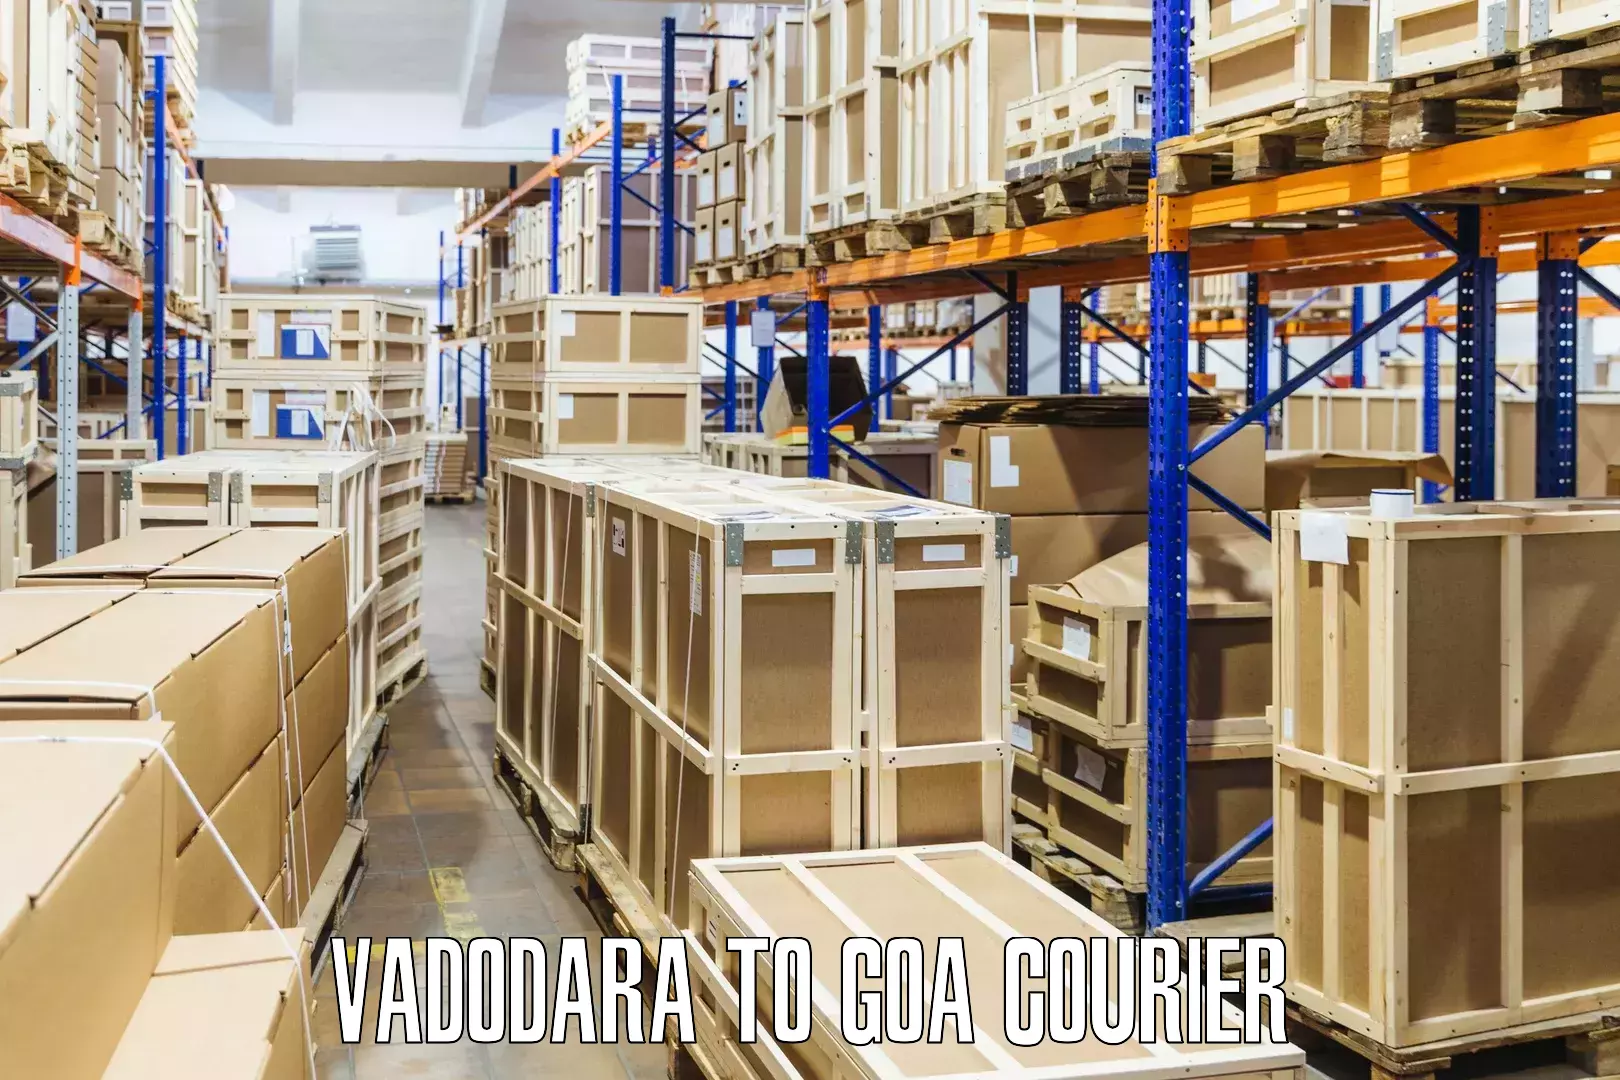 Cargo delivery service Vadodara to Goa